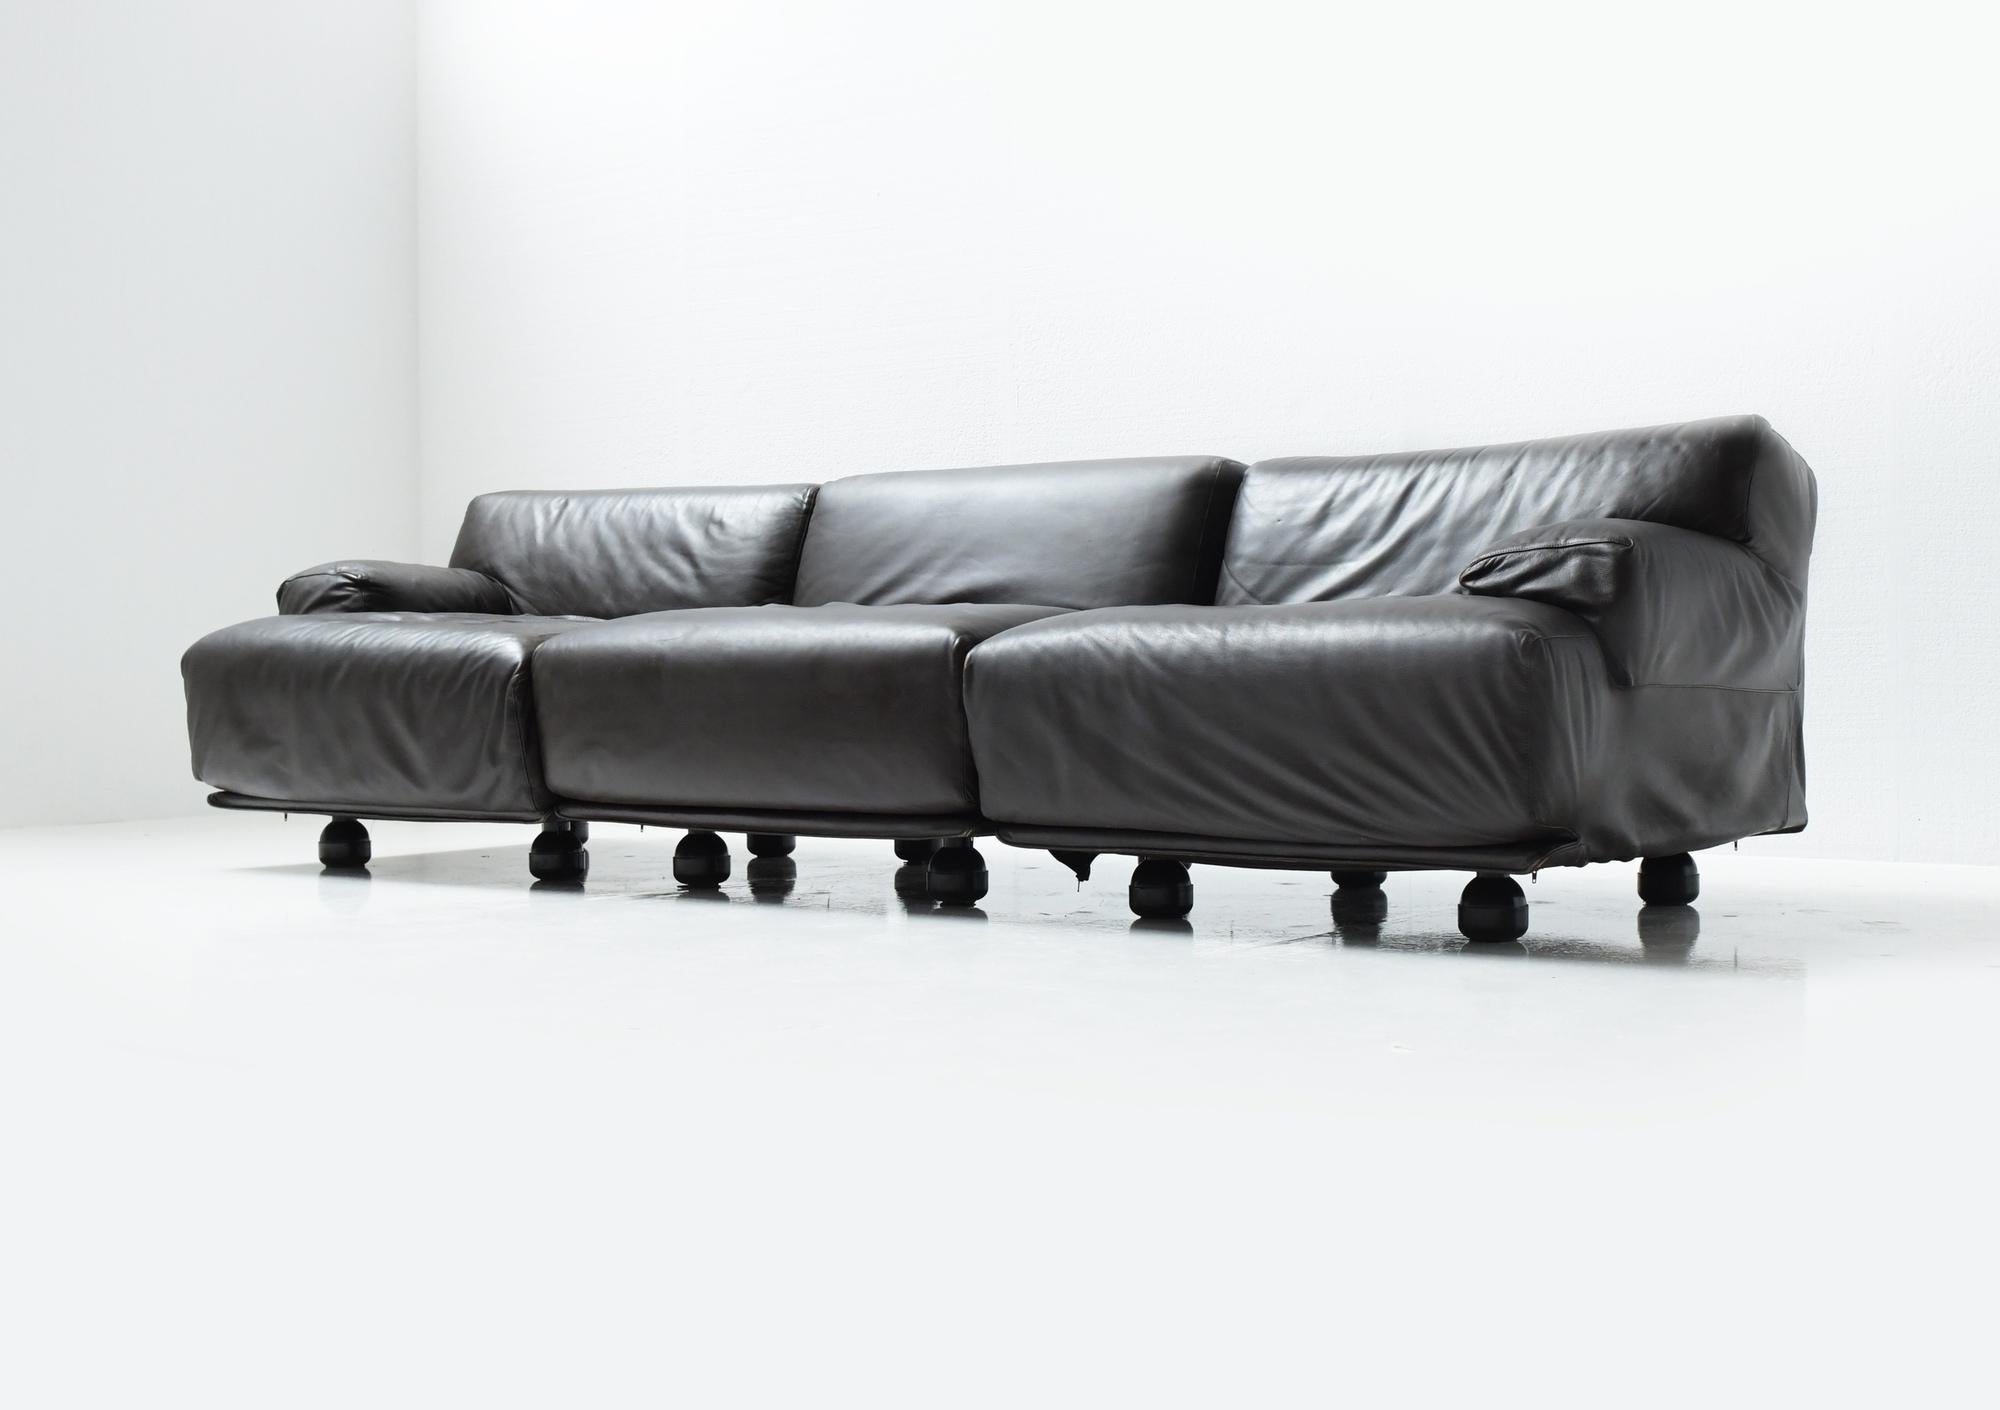 Tolles modulares Fiandra-Sofa aus dunkelbraunem Leder.
Entworfen von Vico Magistretti für Cassina.

Sehr guter Vintage-Zustand mit normalen Gebrauchsspuren. Mit Label.